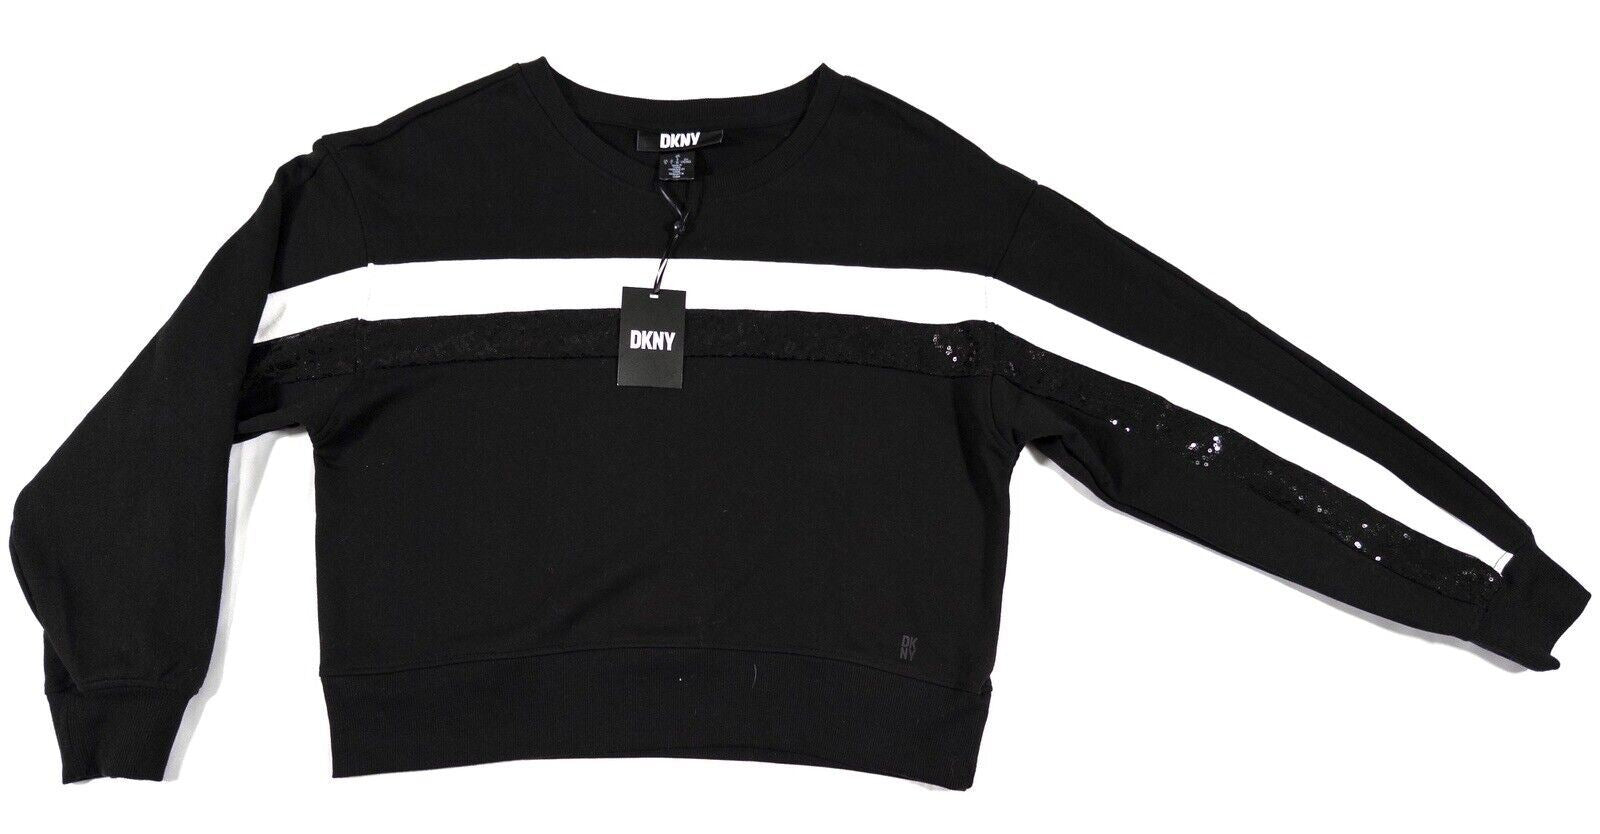 DKNY Women's Sweatshirt Jumper Size UK Large Black and White